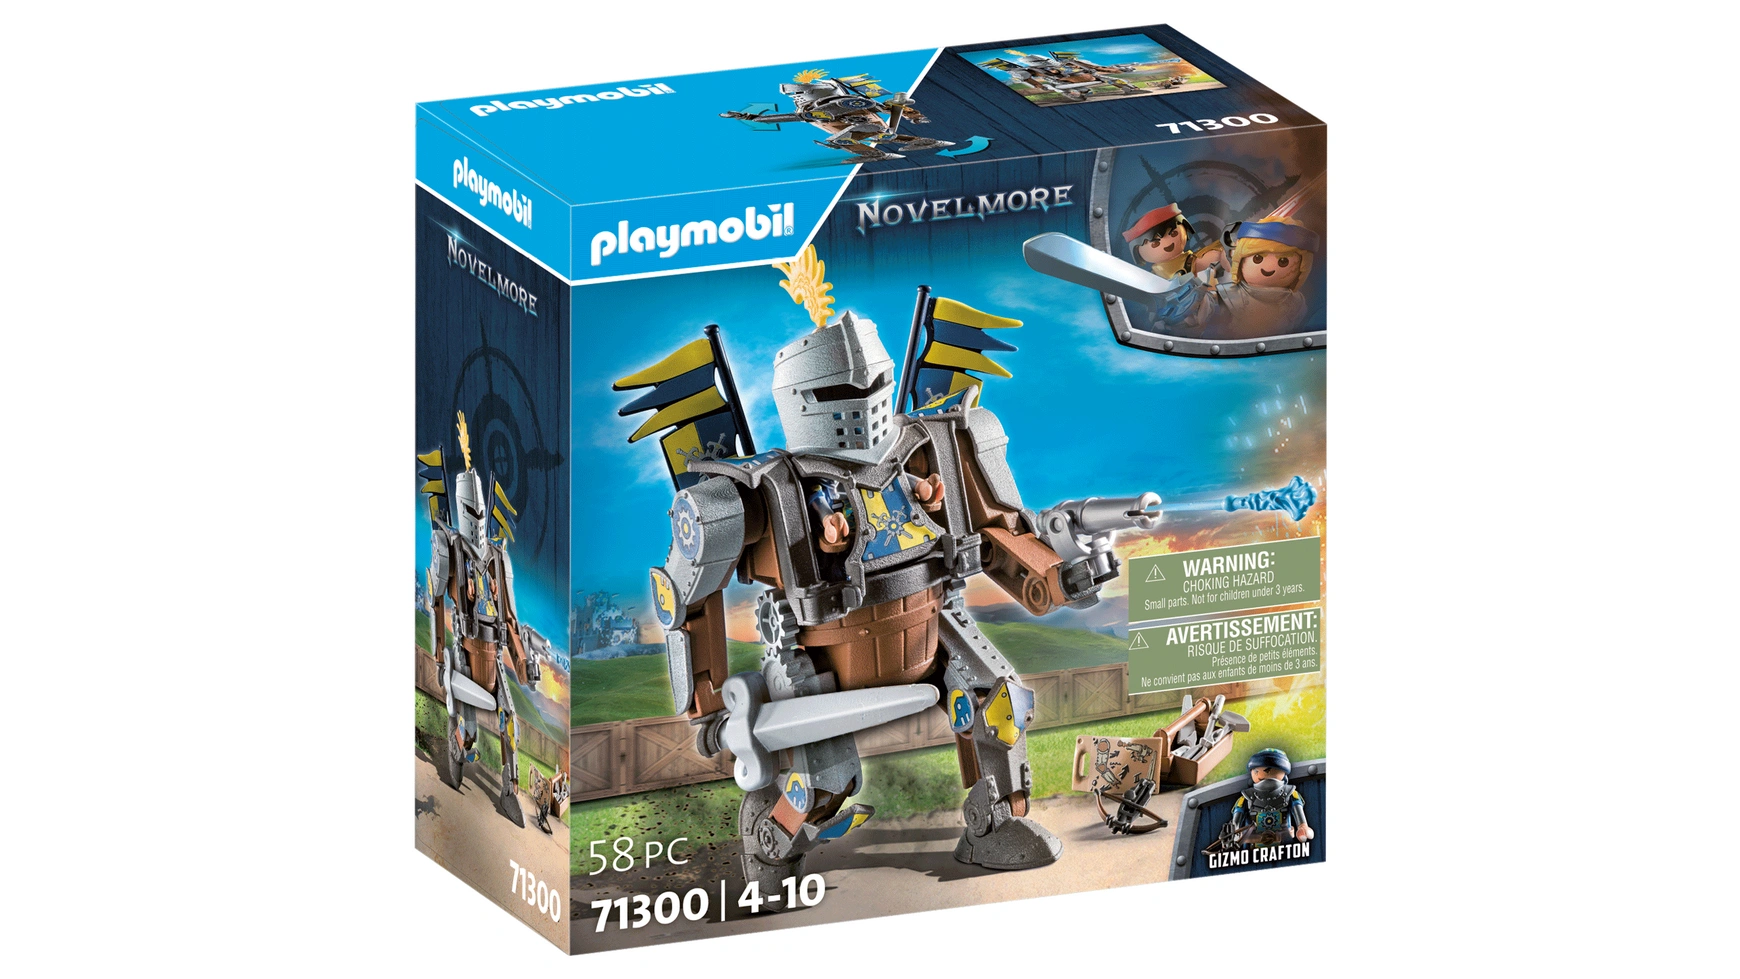 Novelmore боевой робот Playmobil ws 805 статуэтка воин с мечом